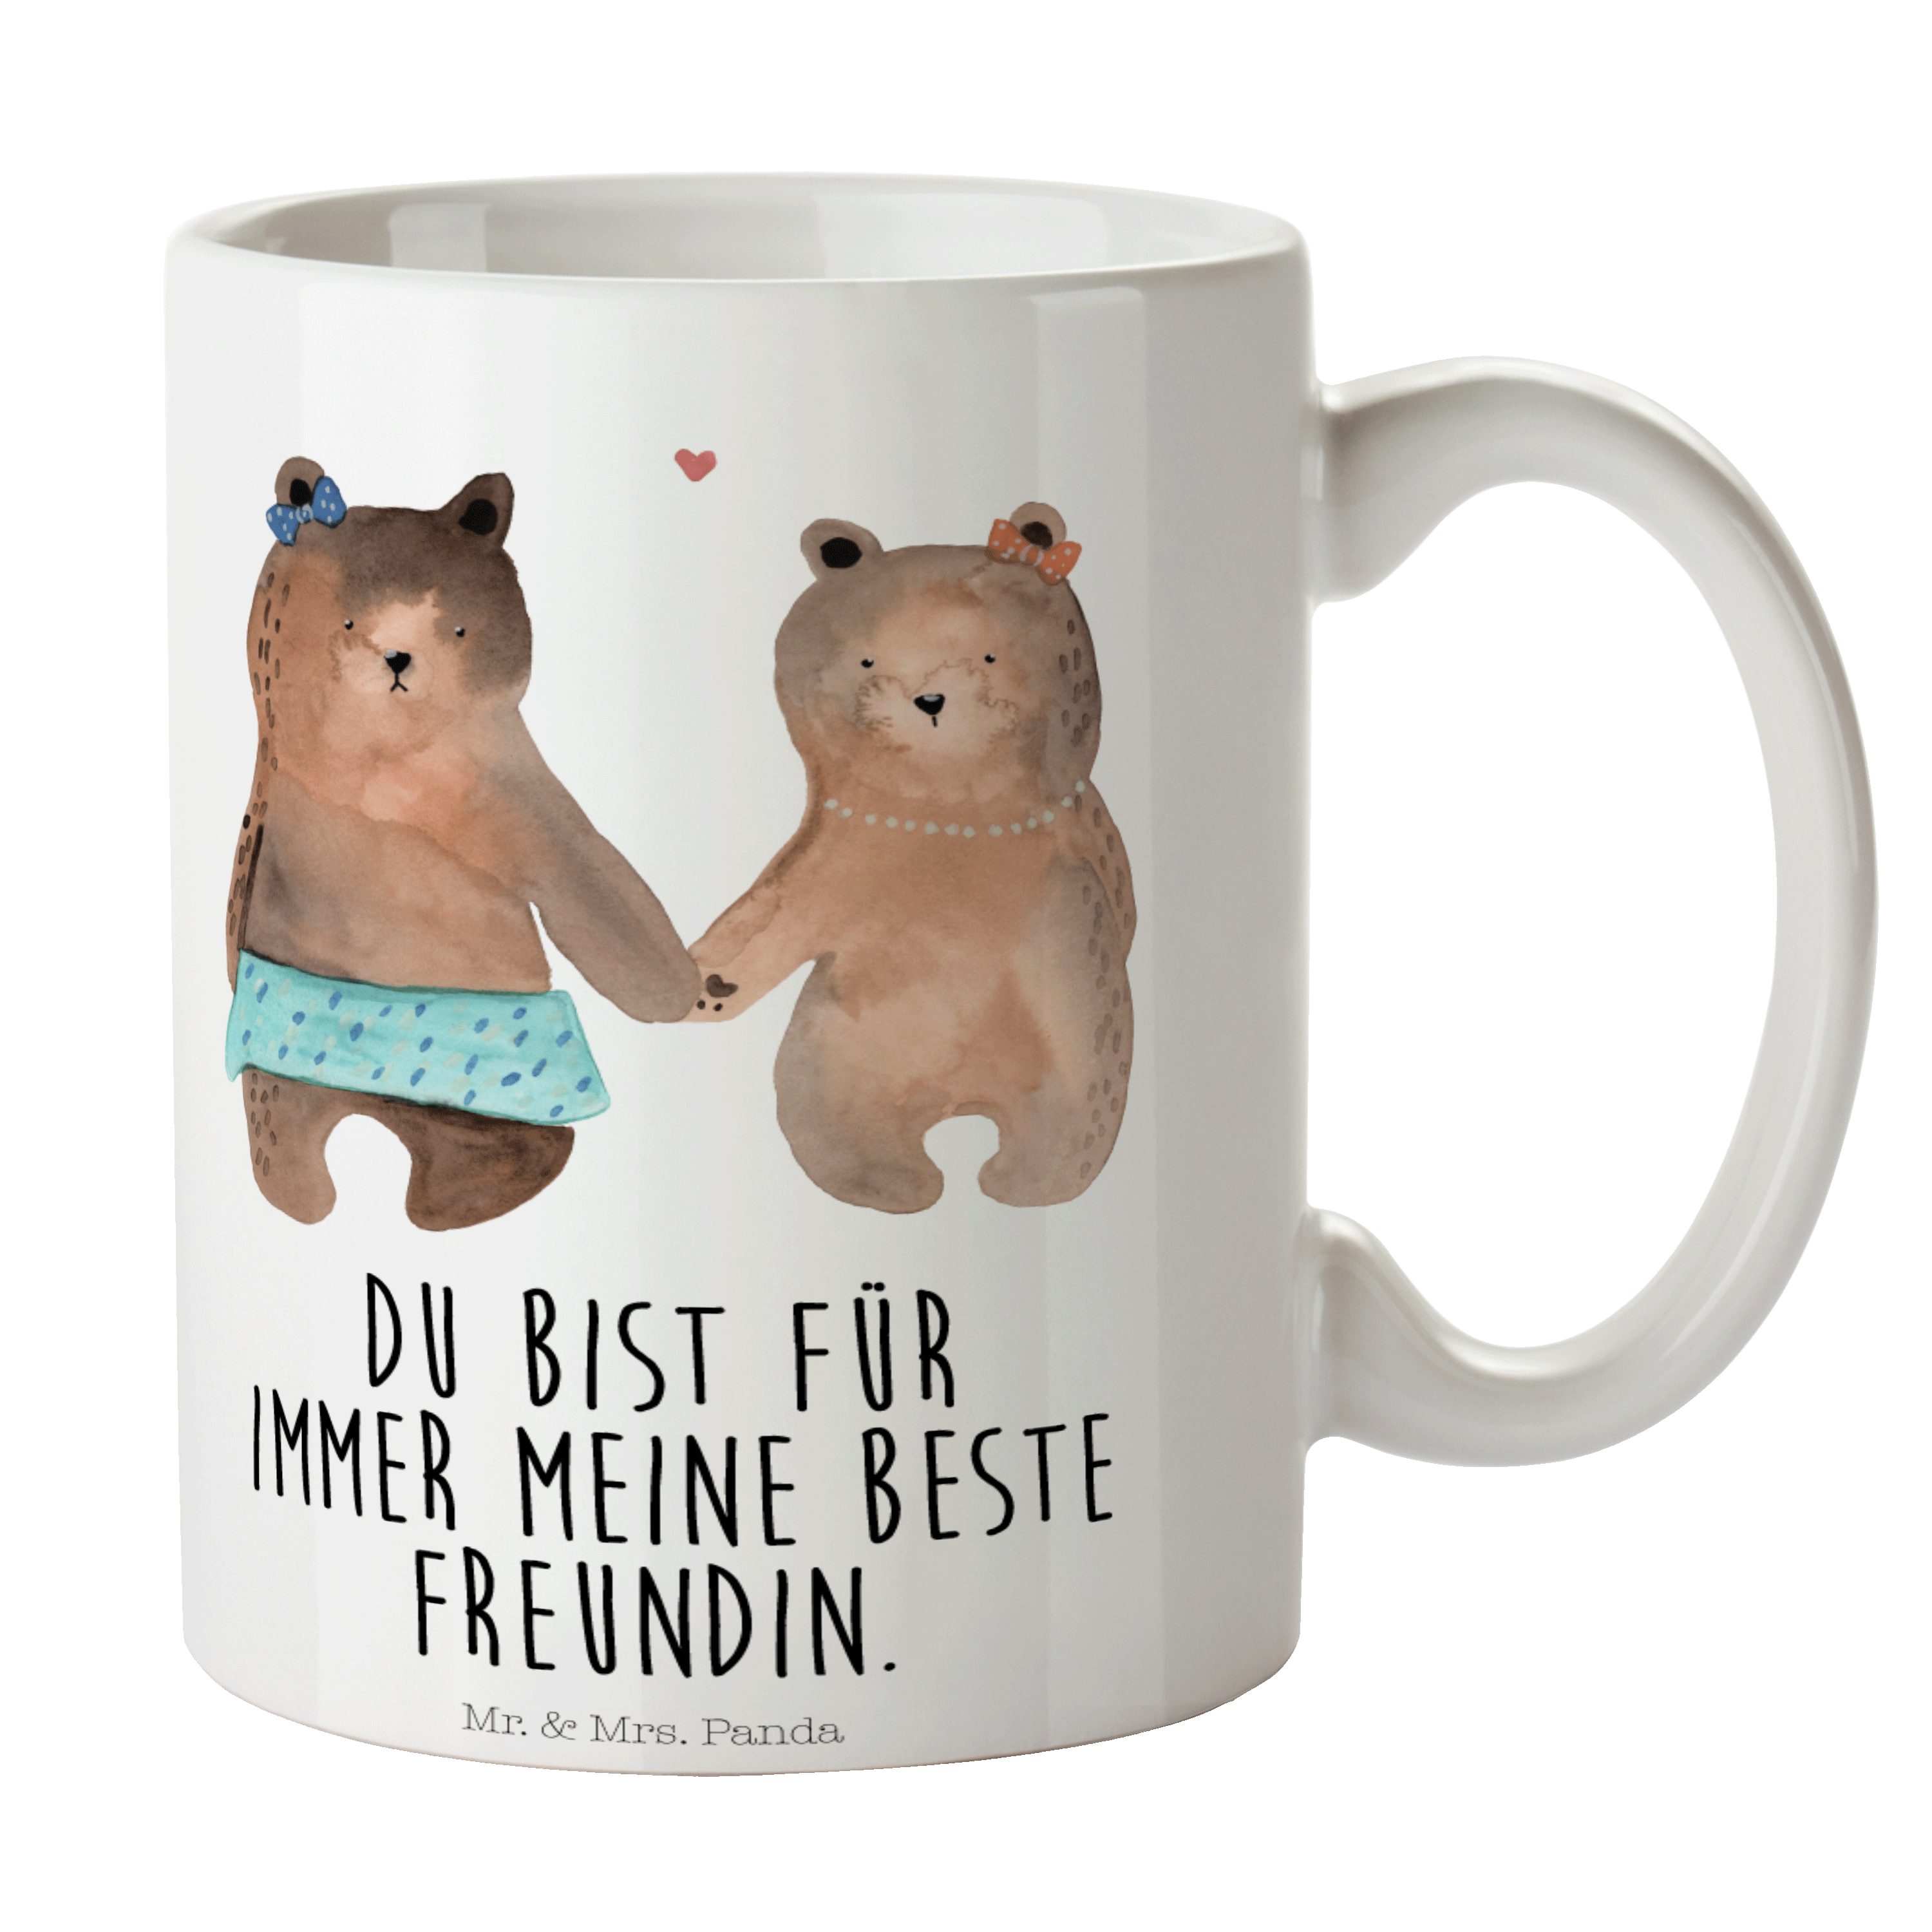 Mr. & Mrs. Panda Tasse Bär Freundin - Weiß - Geschenk, Teetasse, Kaffeetasse, Porzellantasse, Keramik